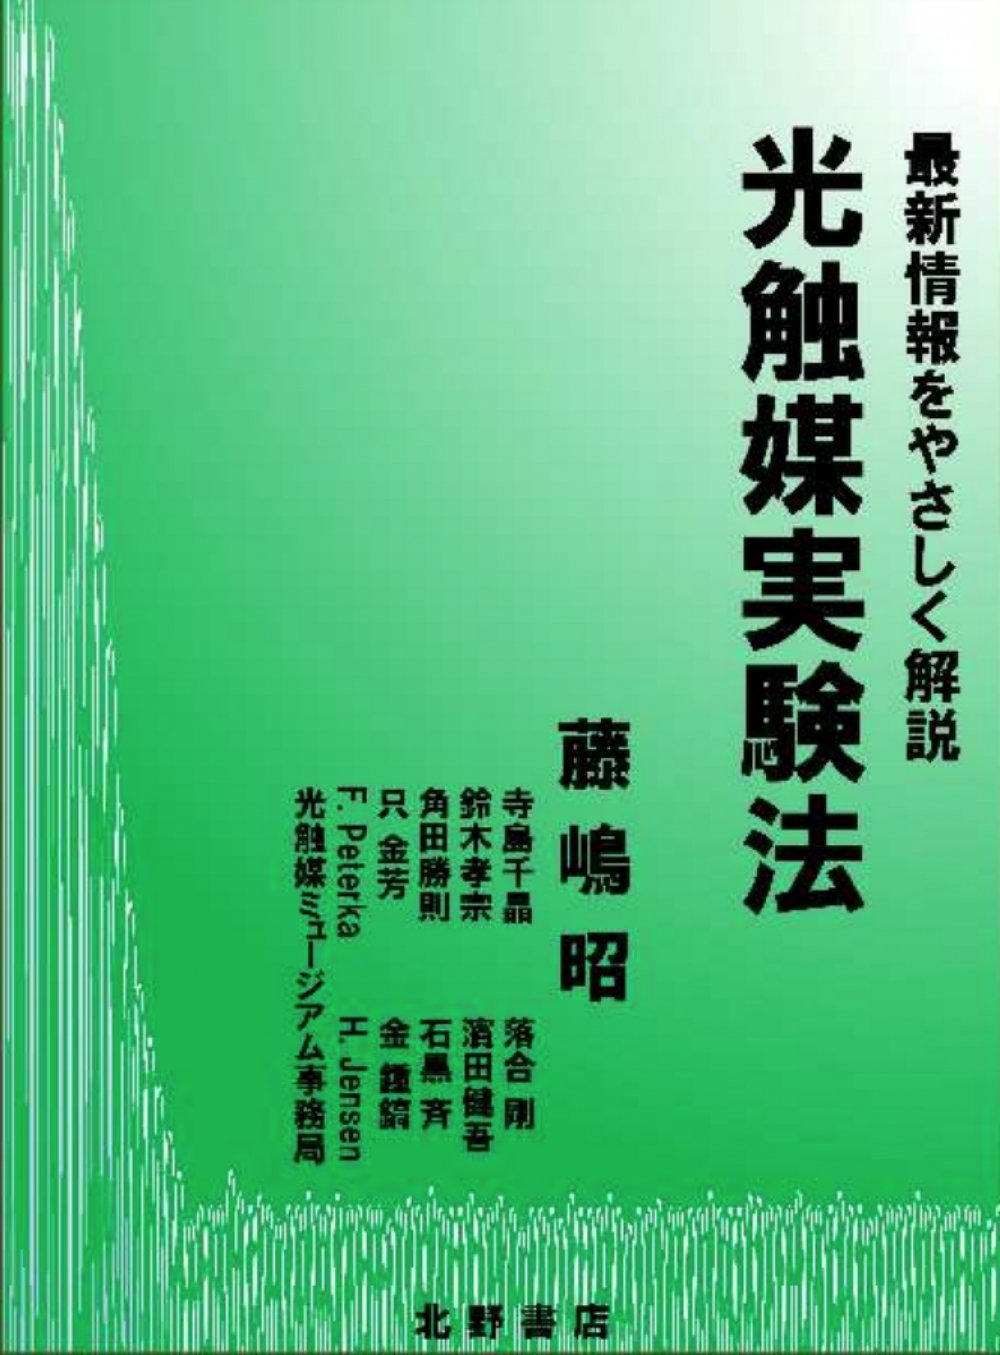 藤嶋昭先生 新刊出版のお知らせ「光触媒実験法」【2021.03.22】